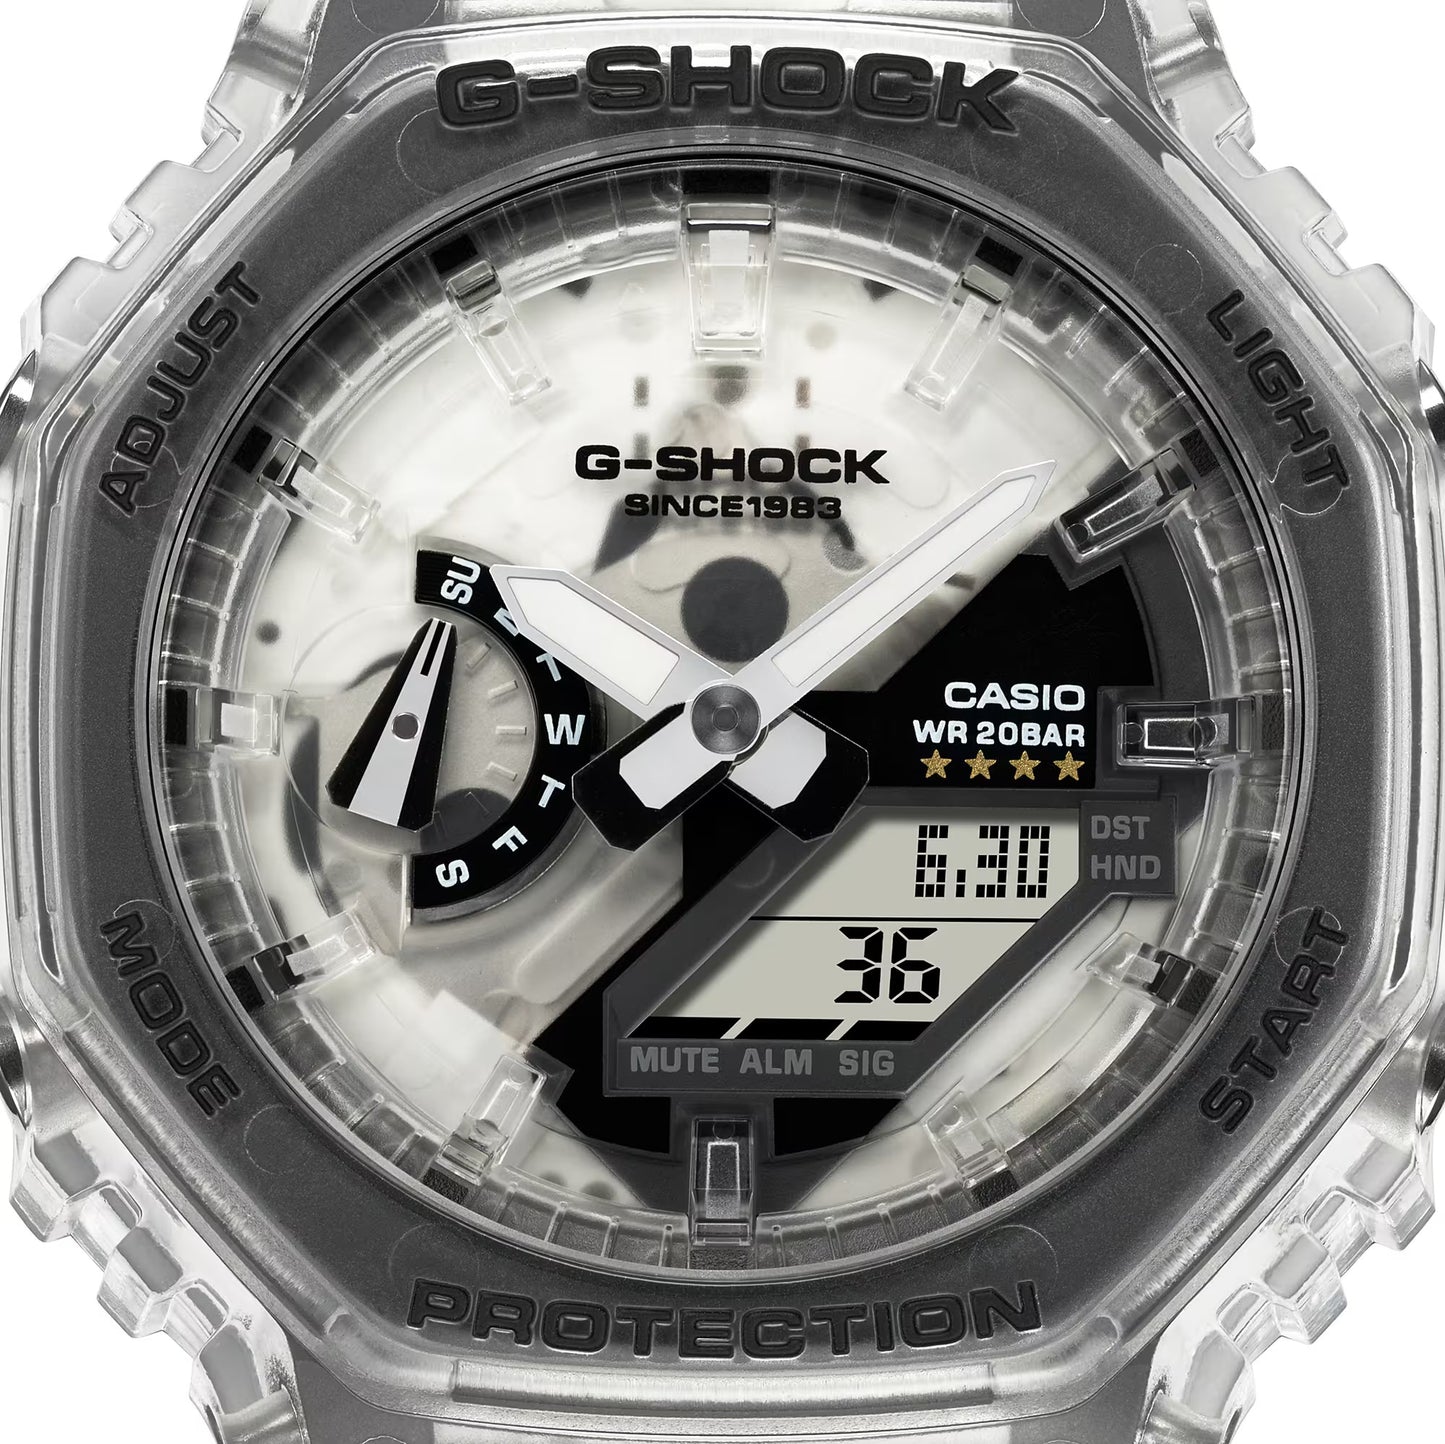 CASIO G-SHOCK GA-2140RX-7A "CASIOAK" 40TH ANNIVERSARY REMIX WATCH